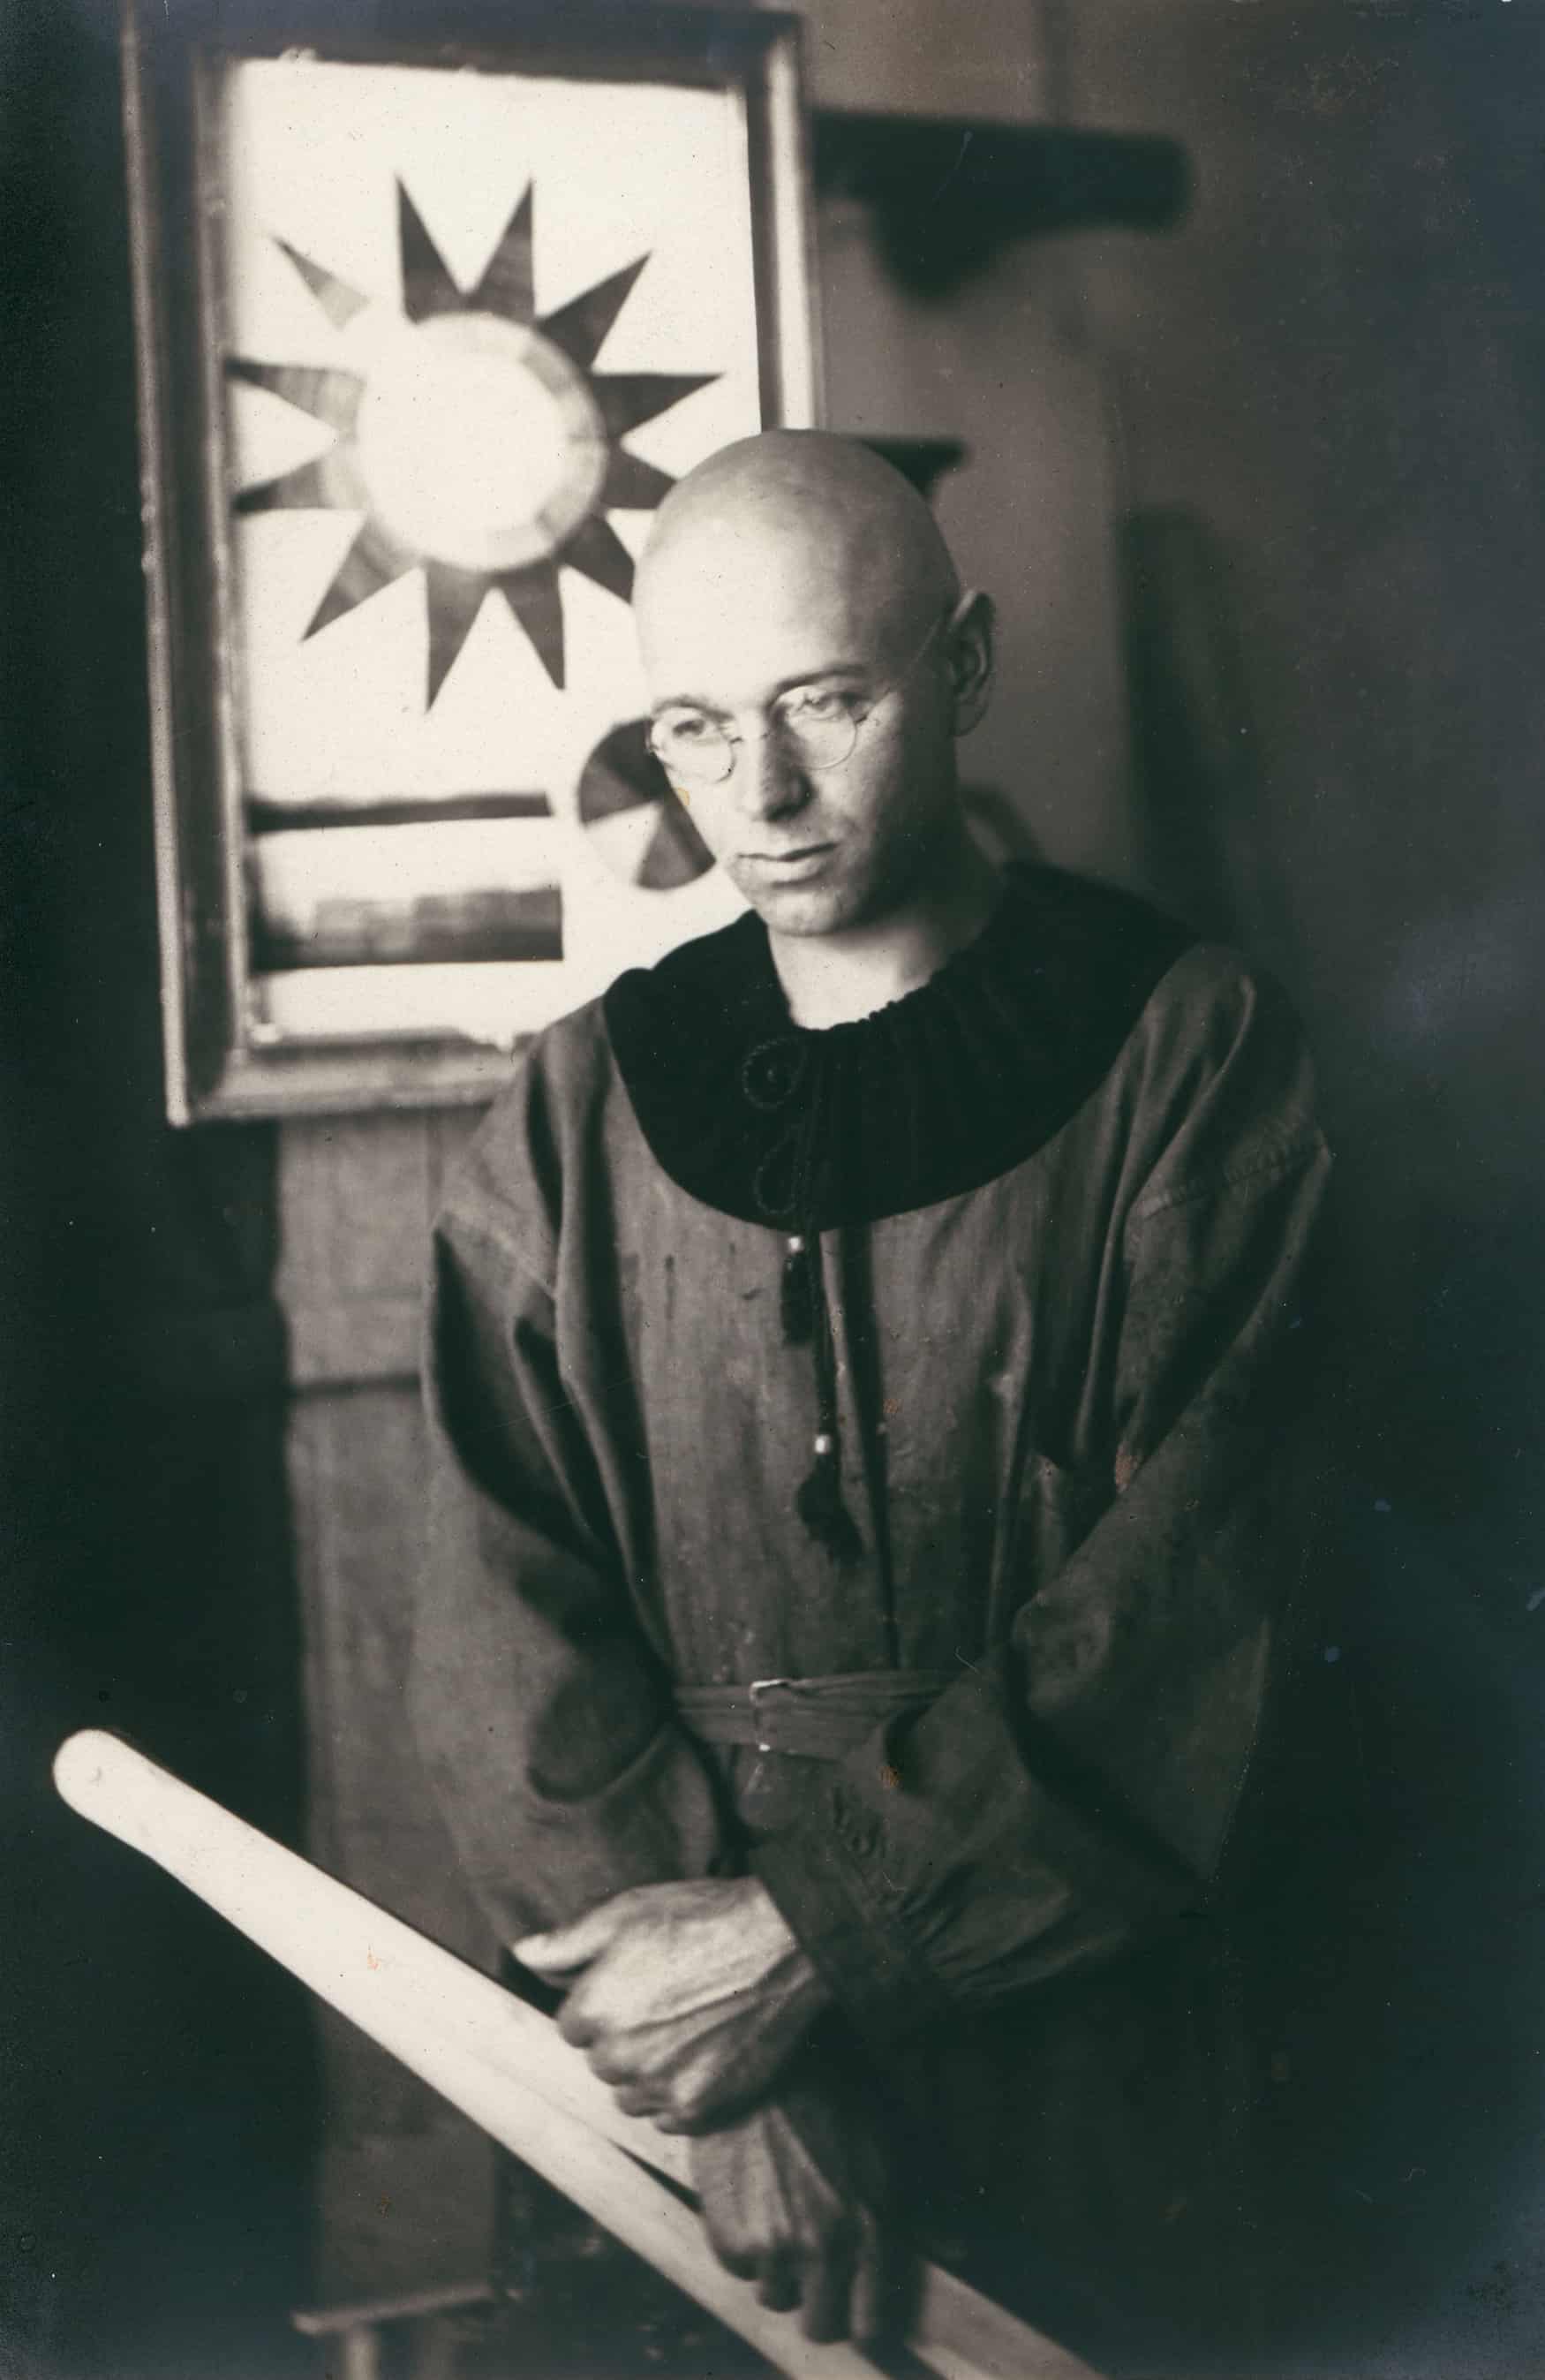 Porträt-Archivbild von Johannes Itten. Ein glatzköpfiger junger Mann in einem Gewand.